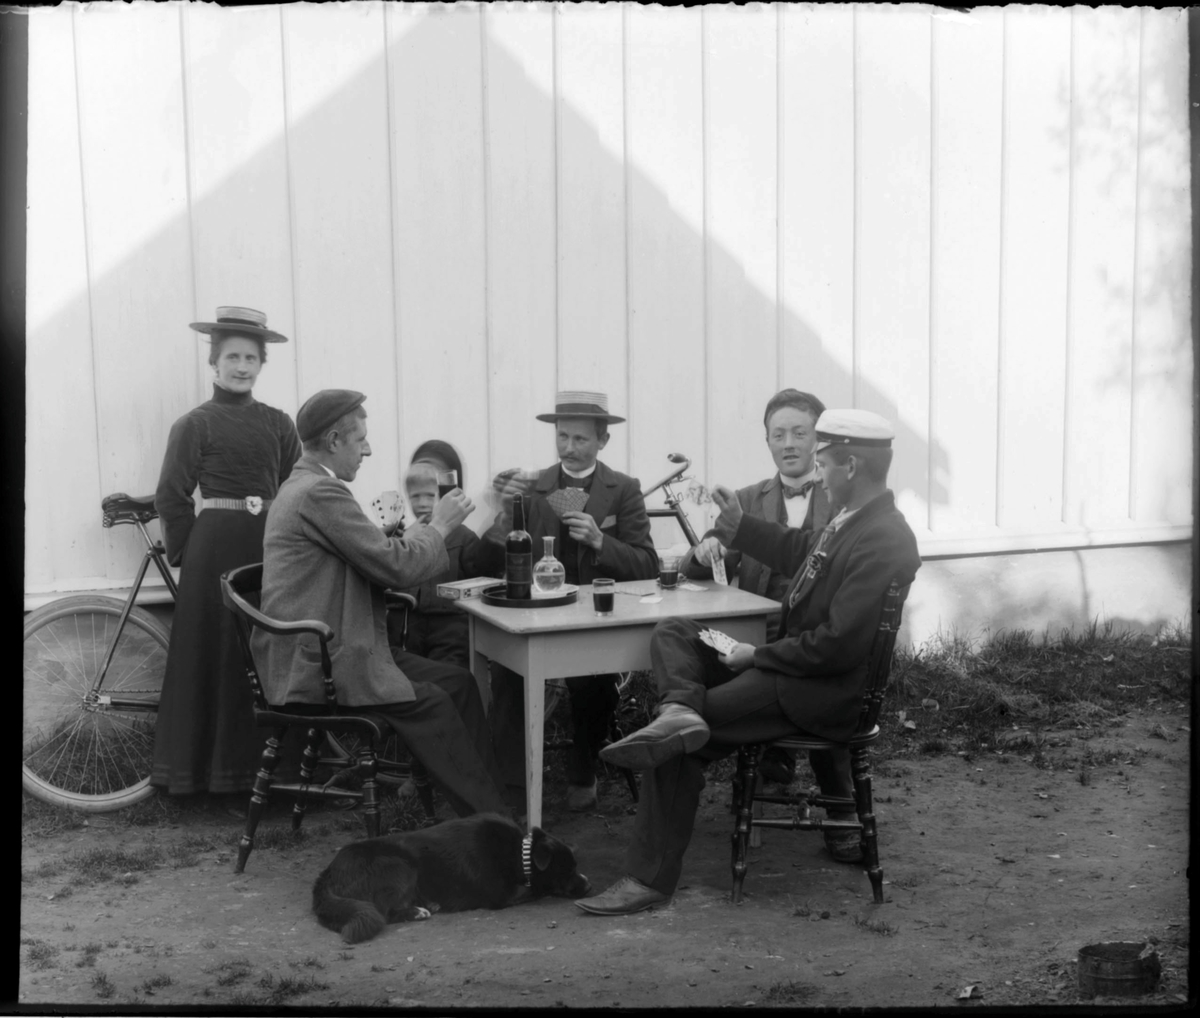 Fire menn spiller kort ute i solveggen